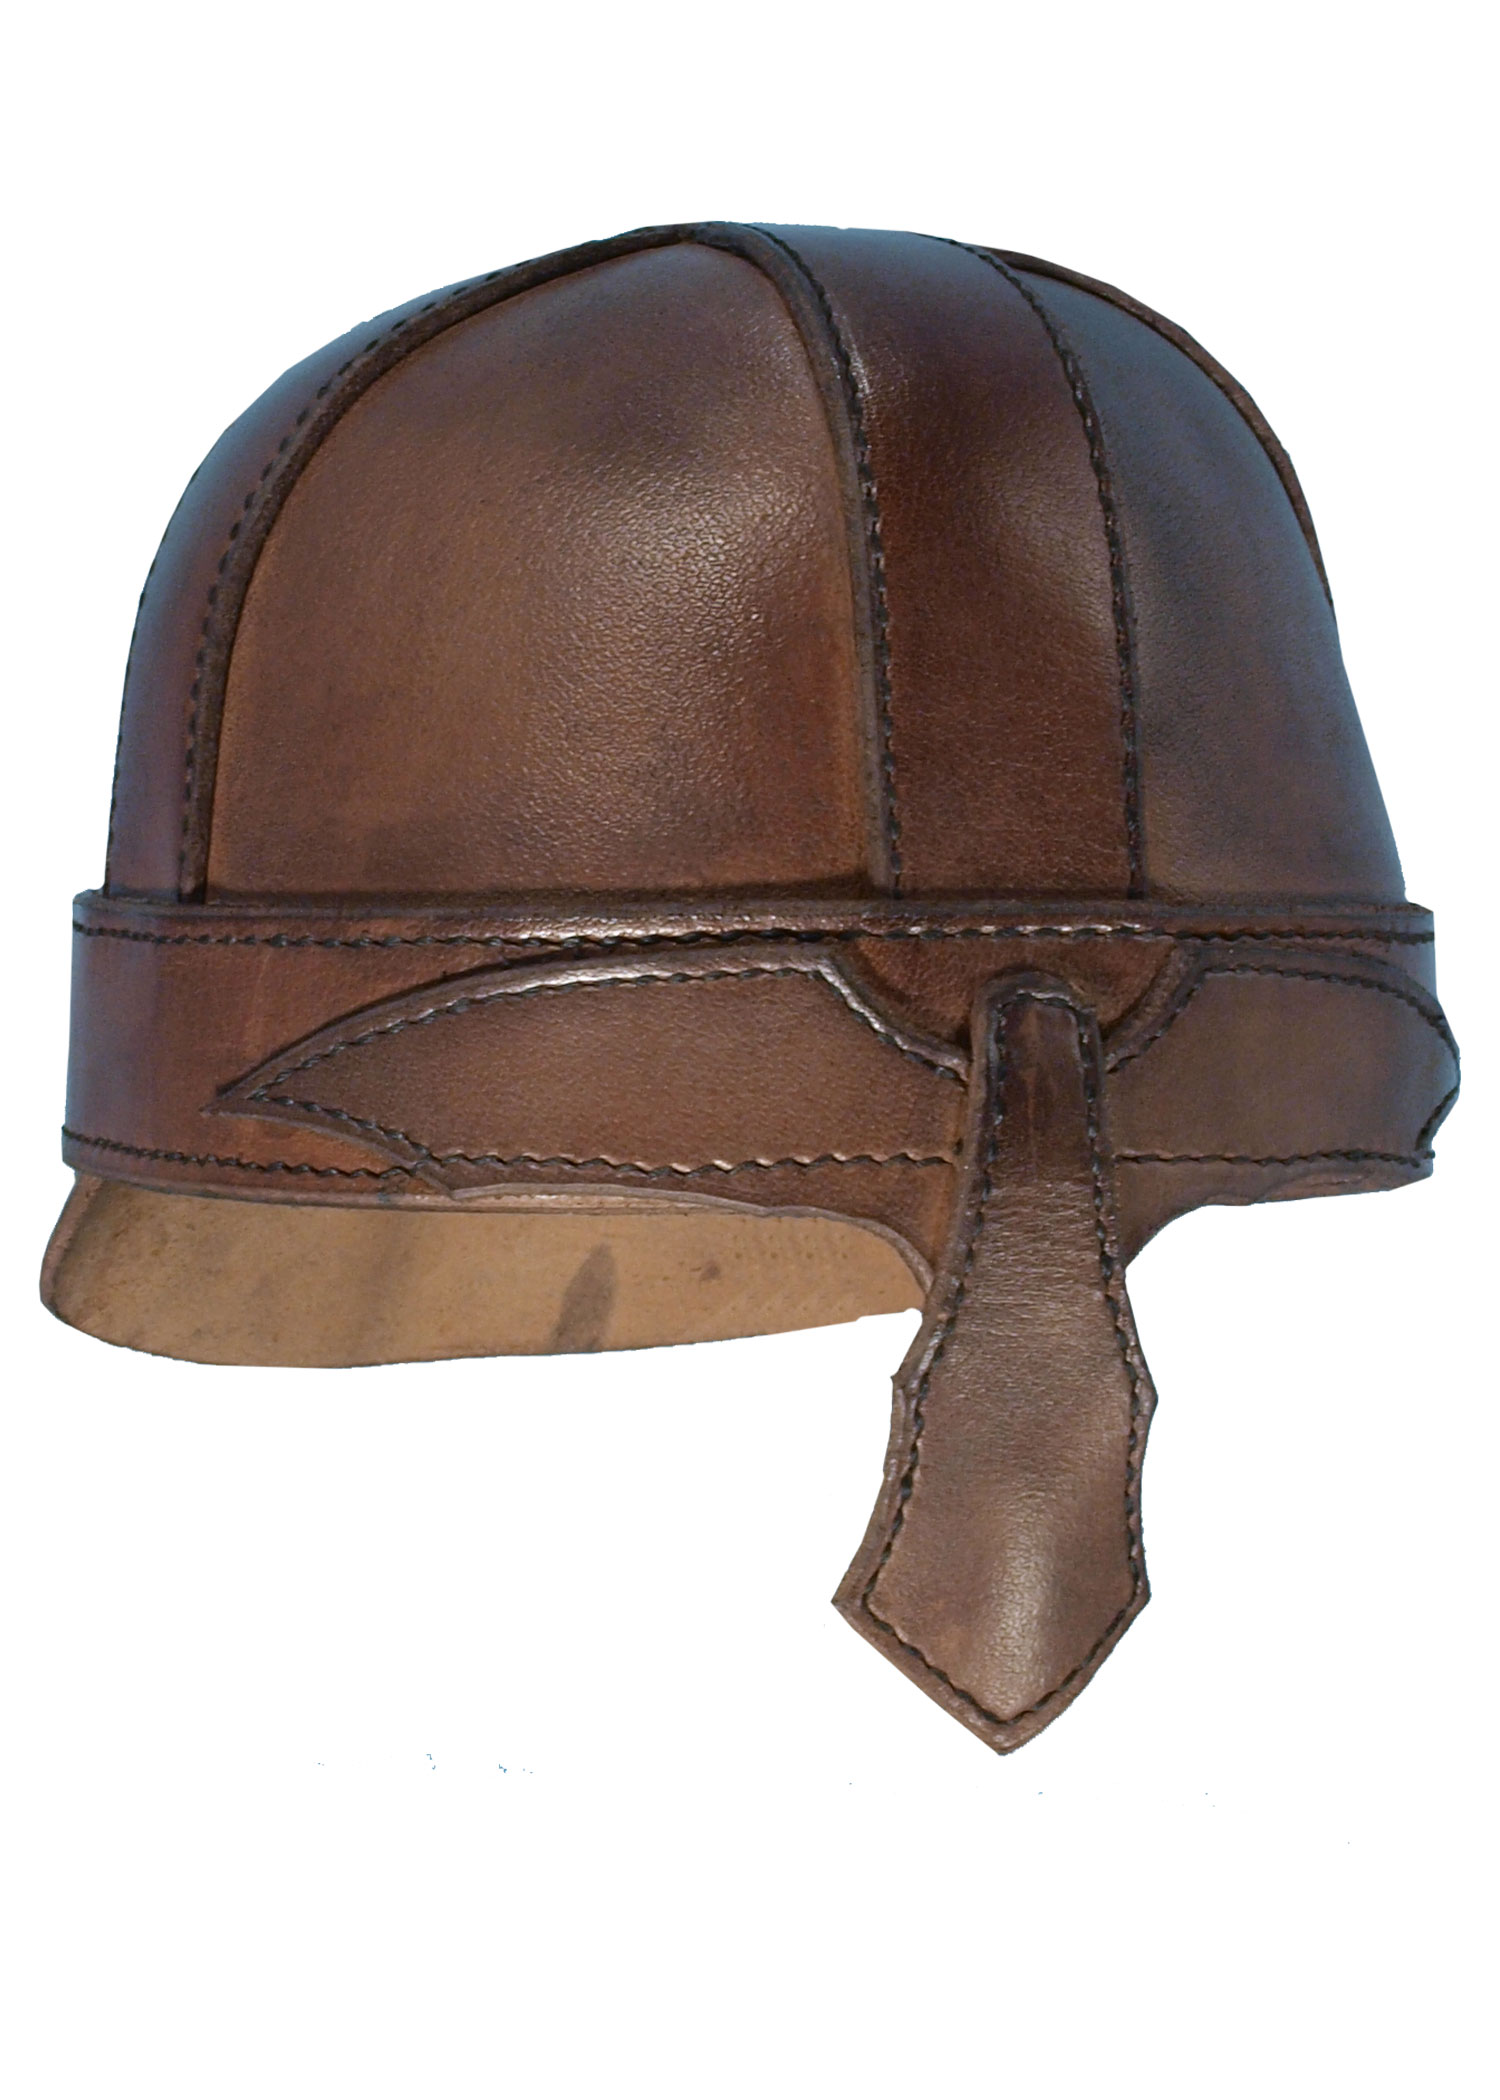 Helm Warrior aus Leder, braun, Größe L